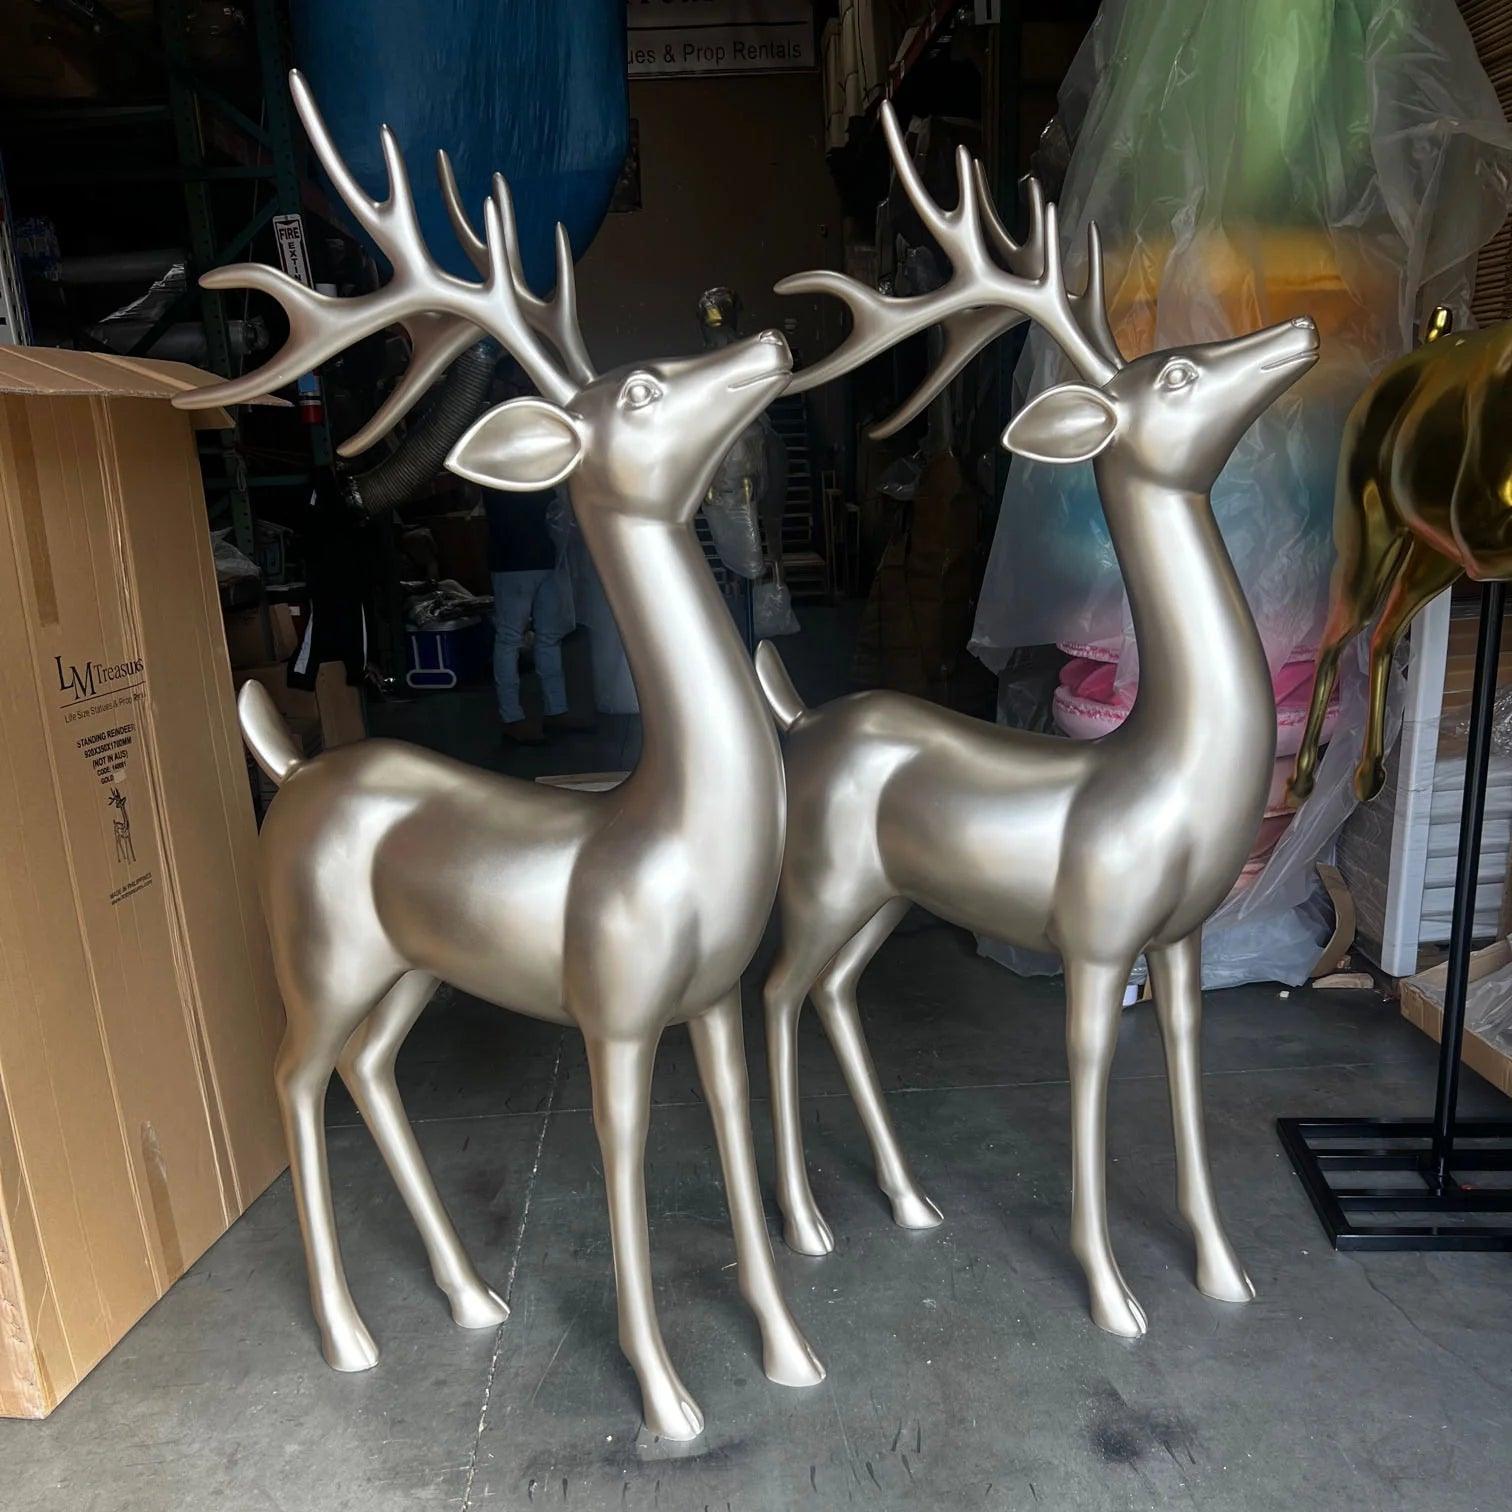 Standing Gold Reindeer Statue - LM Treasures Prop Rentals 